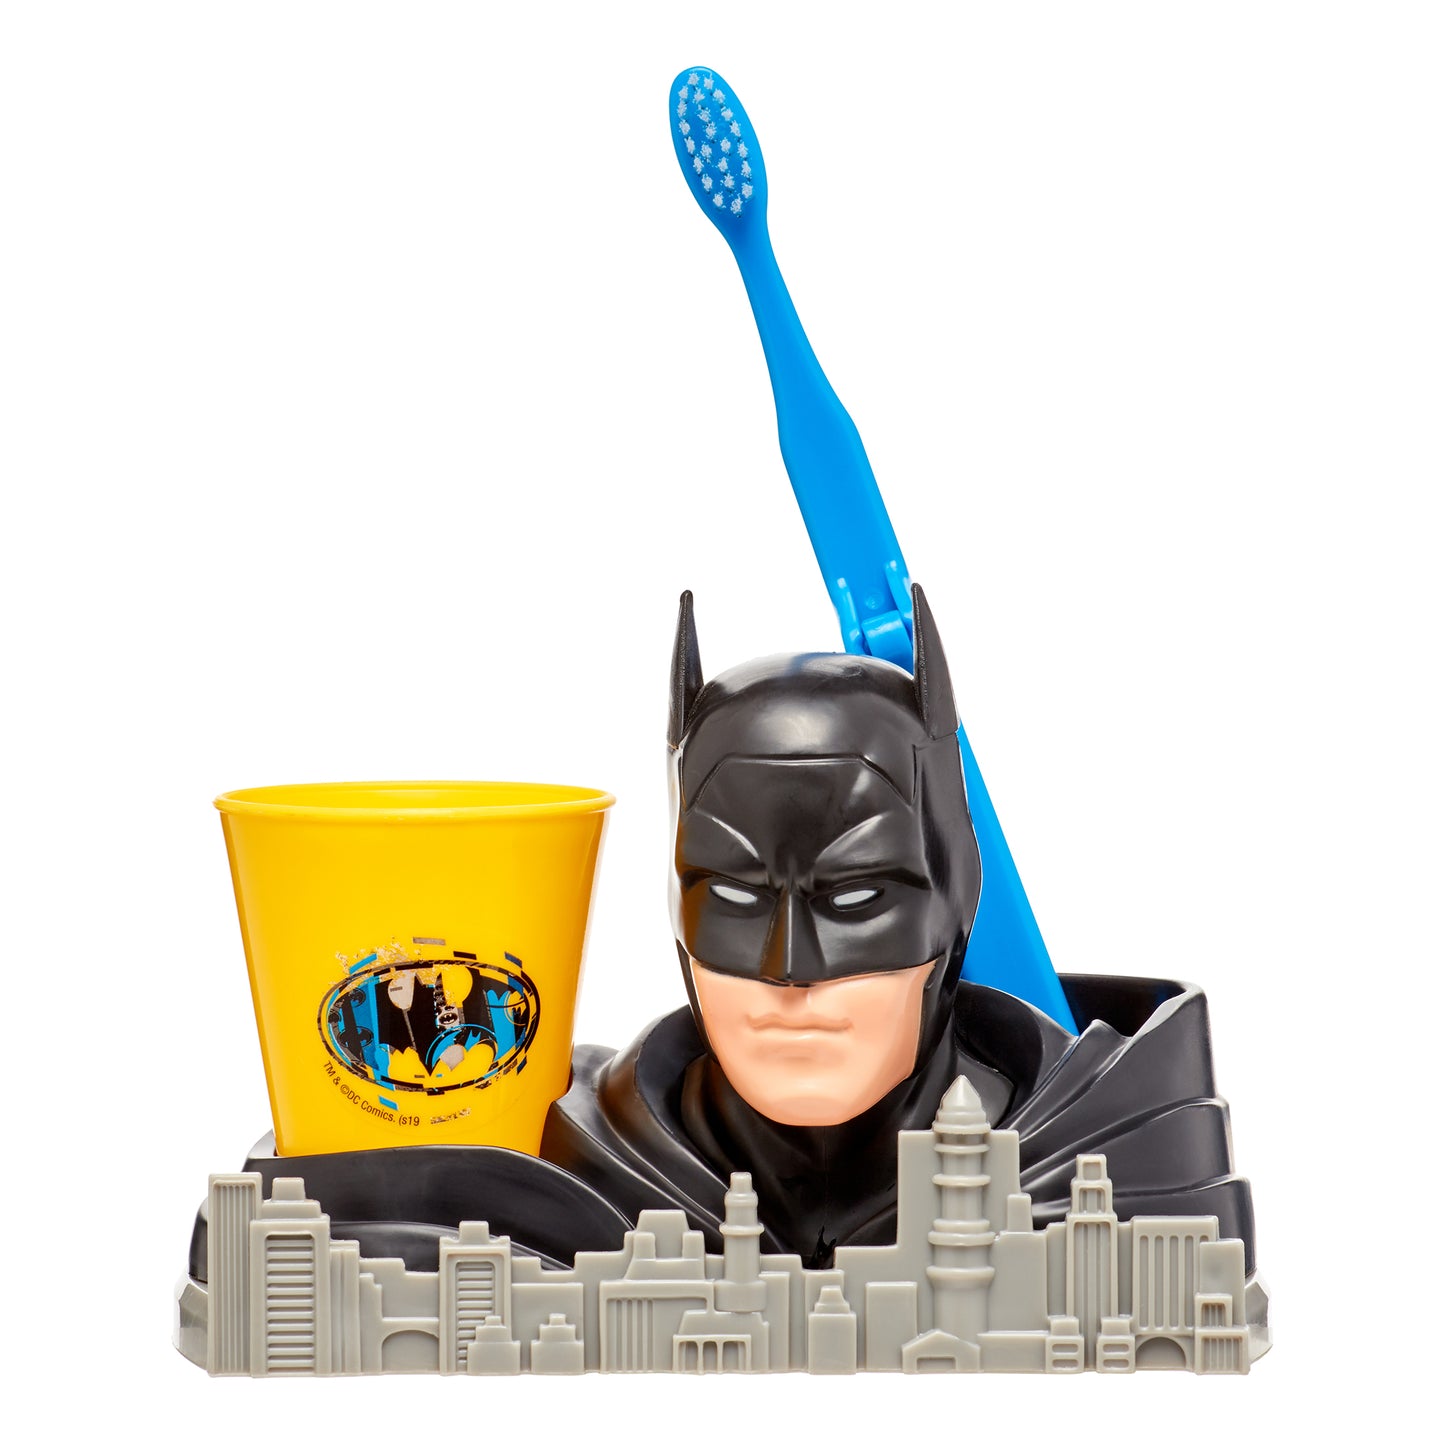 Batman Super Smile Set - Toothbrush Holder, Toothbrush & Rinse Cup